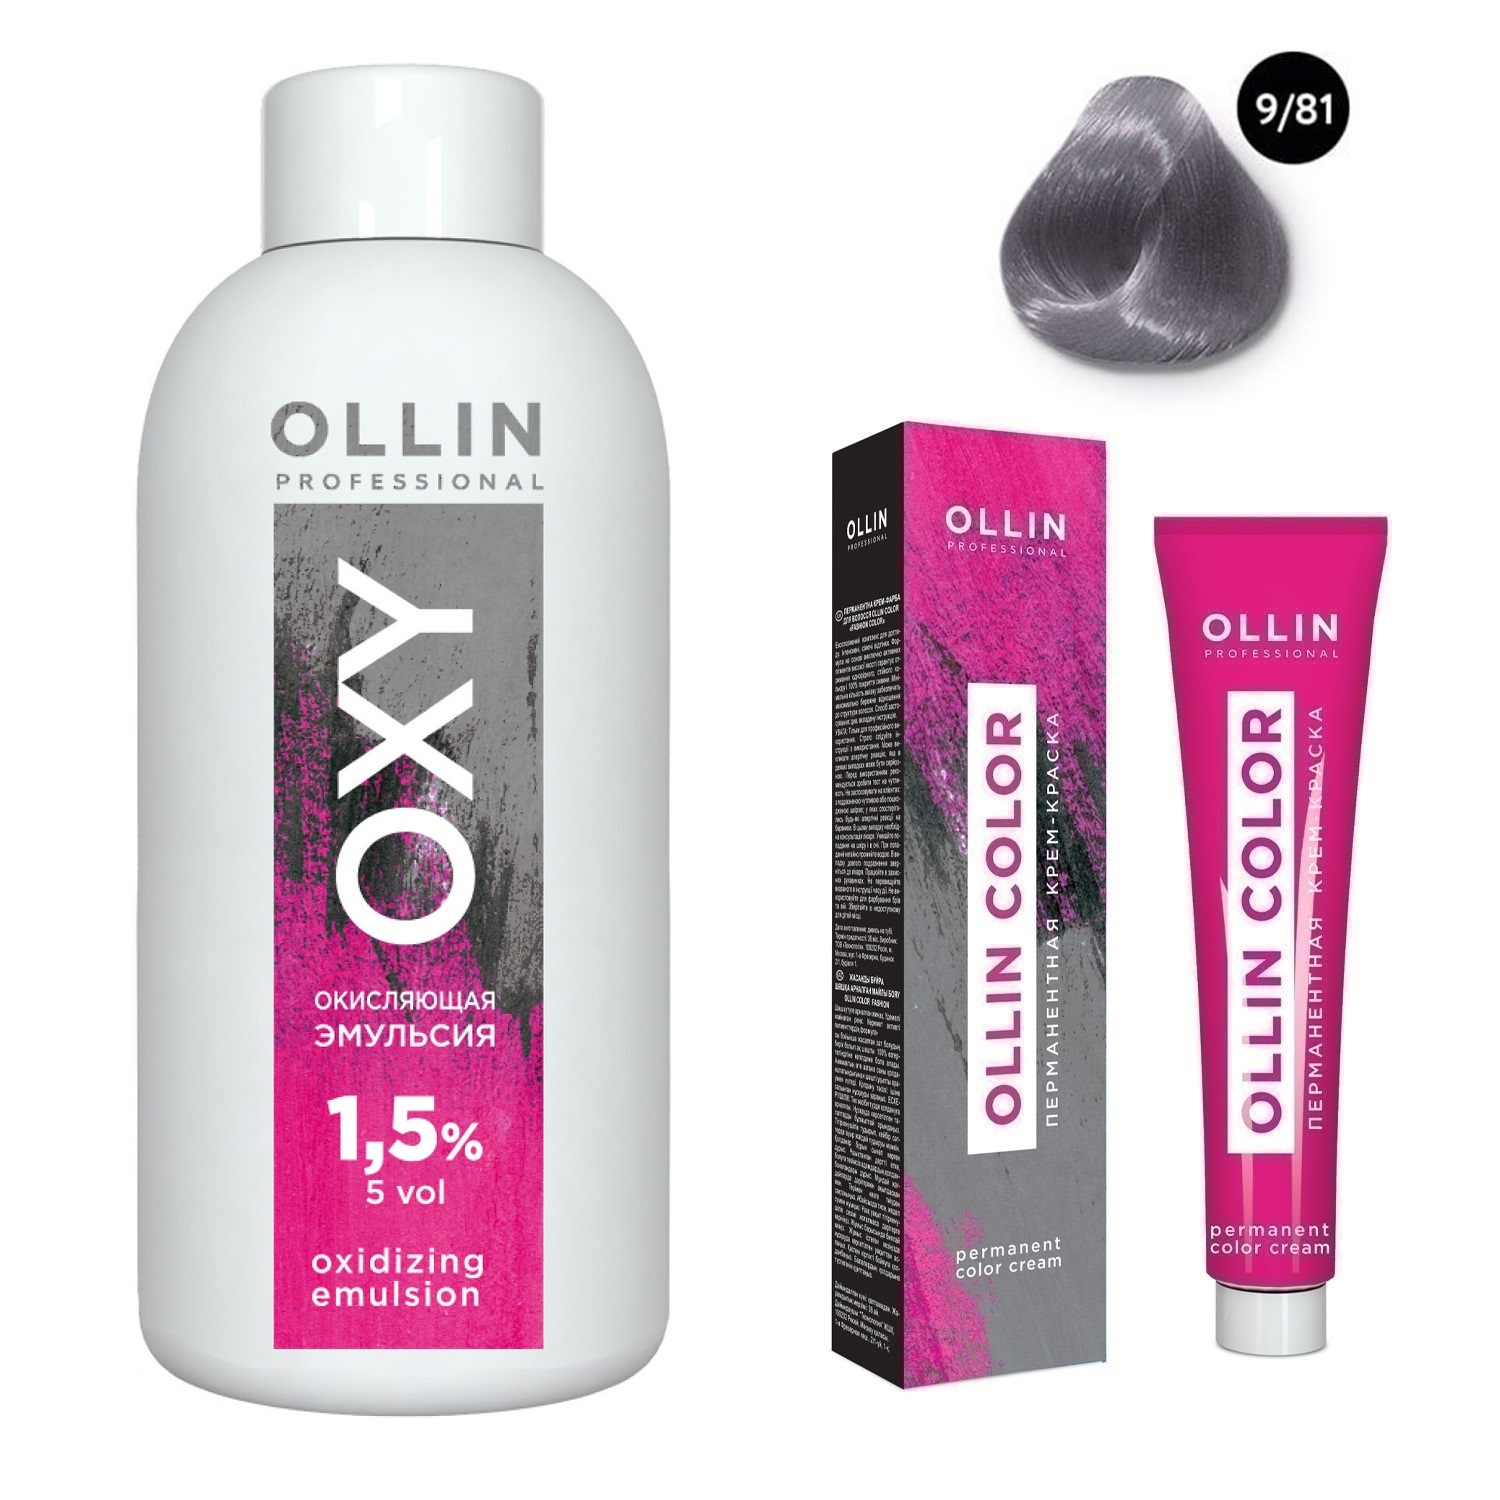 Ollin Professional Набор Перманентная крем-краска для волос Ollin Color оттенок 9/81 блондин жемчужно-пепельный 100 мл + Окисляющая эмульсия Oxy 1,5% 150 мл (Ollin Professional, Ollin Color) окисляющая эмульсия oxy 9% 1000 мл